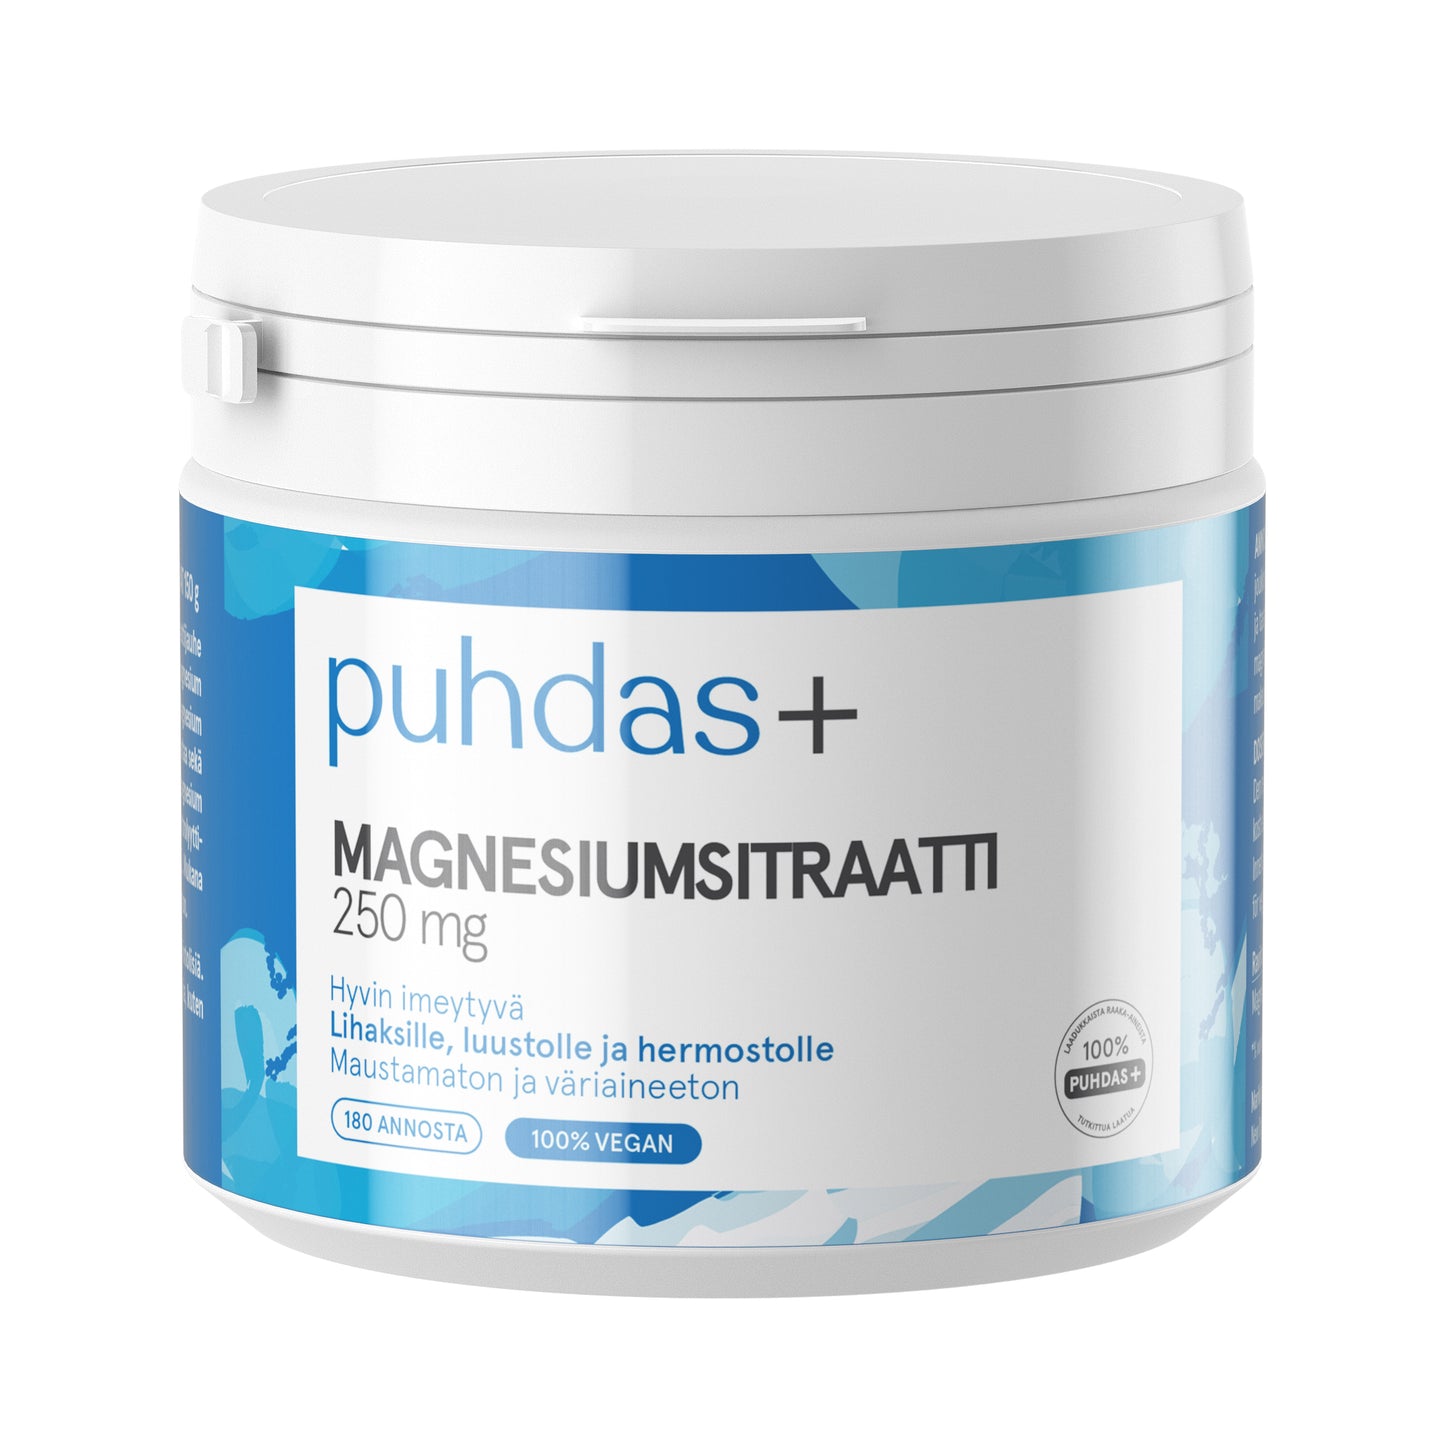 PUHDAS+ magnesiumsitraatti 250 mg jauhe 200 g